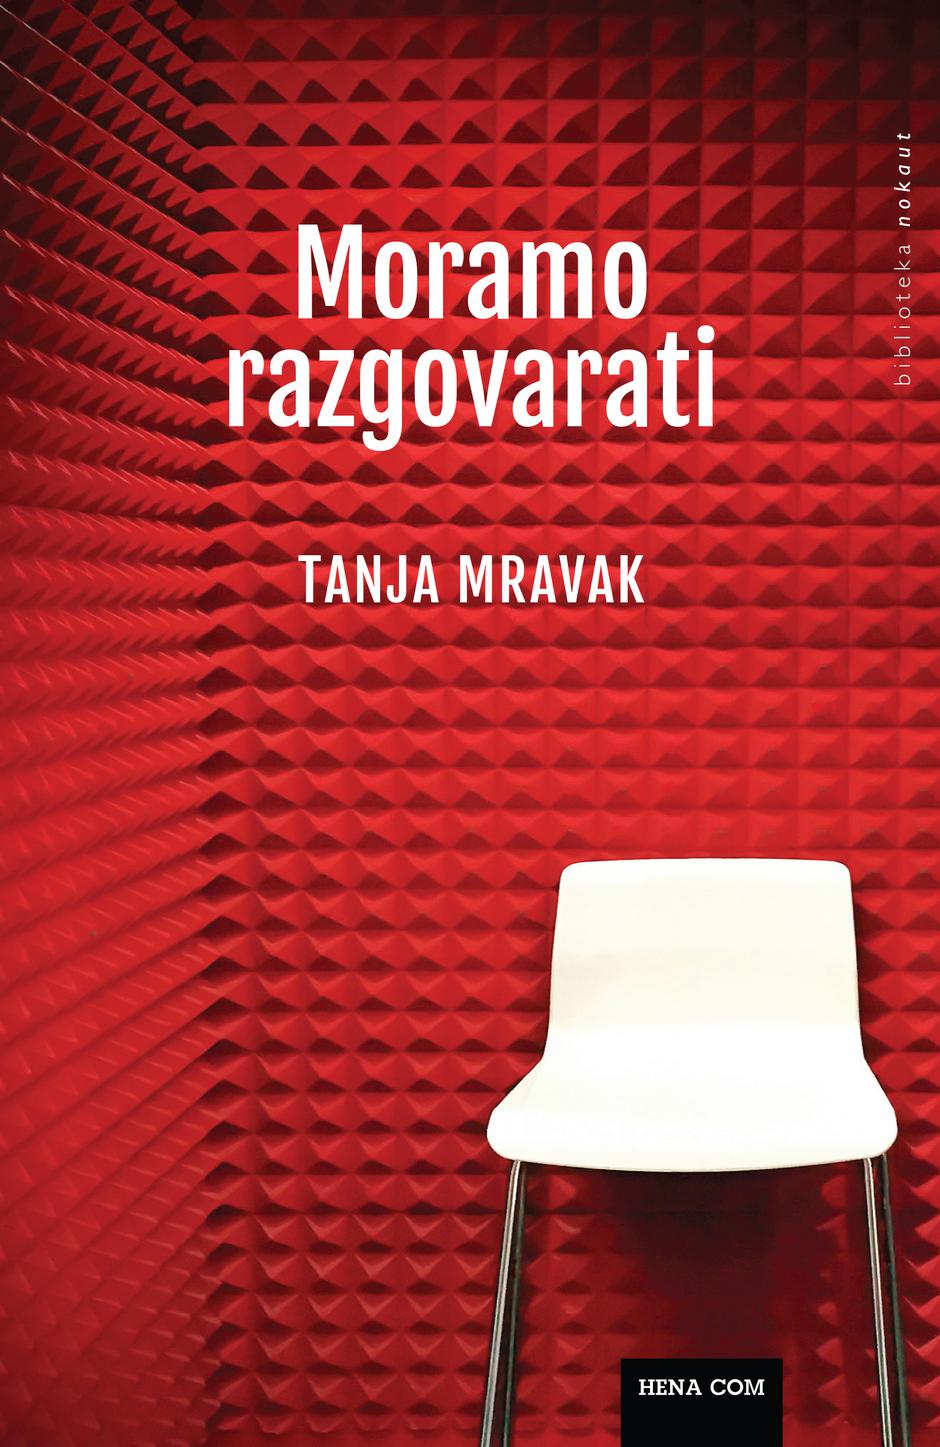 Tanja Mravak "Moramo razgovarati" | Author: Hena